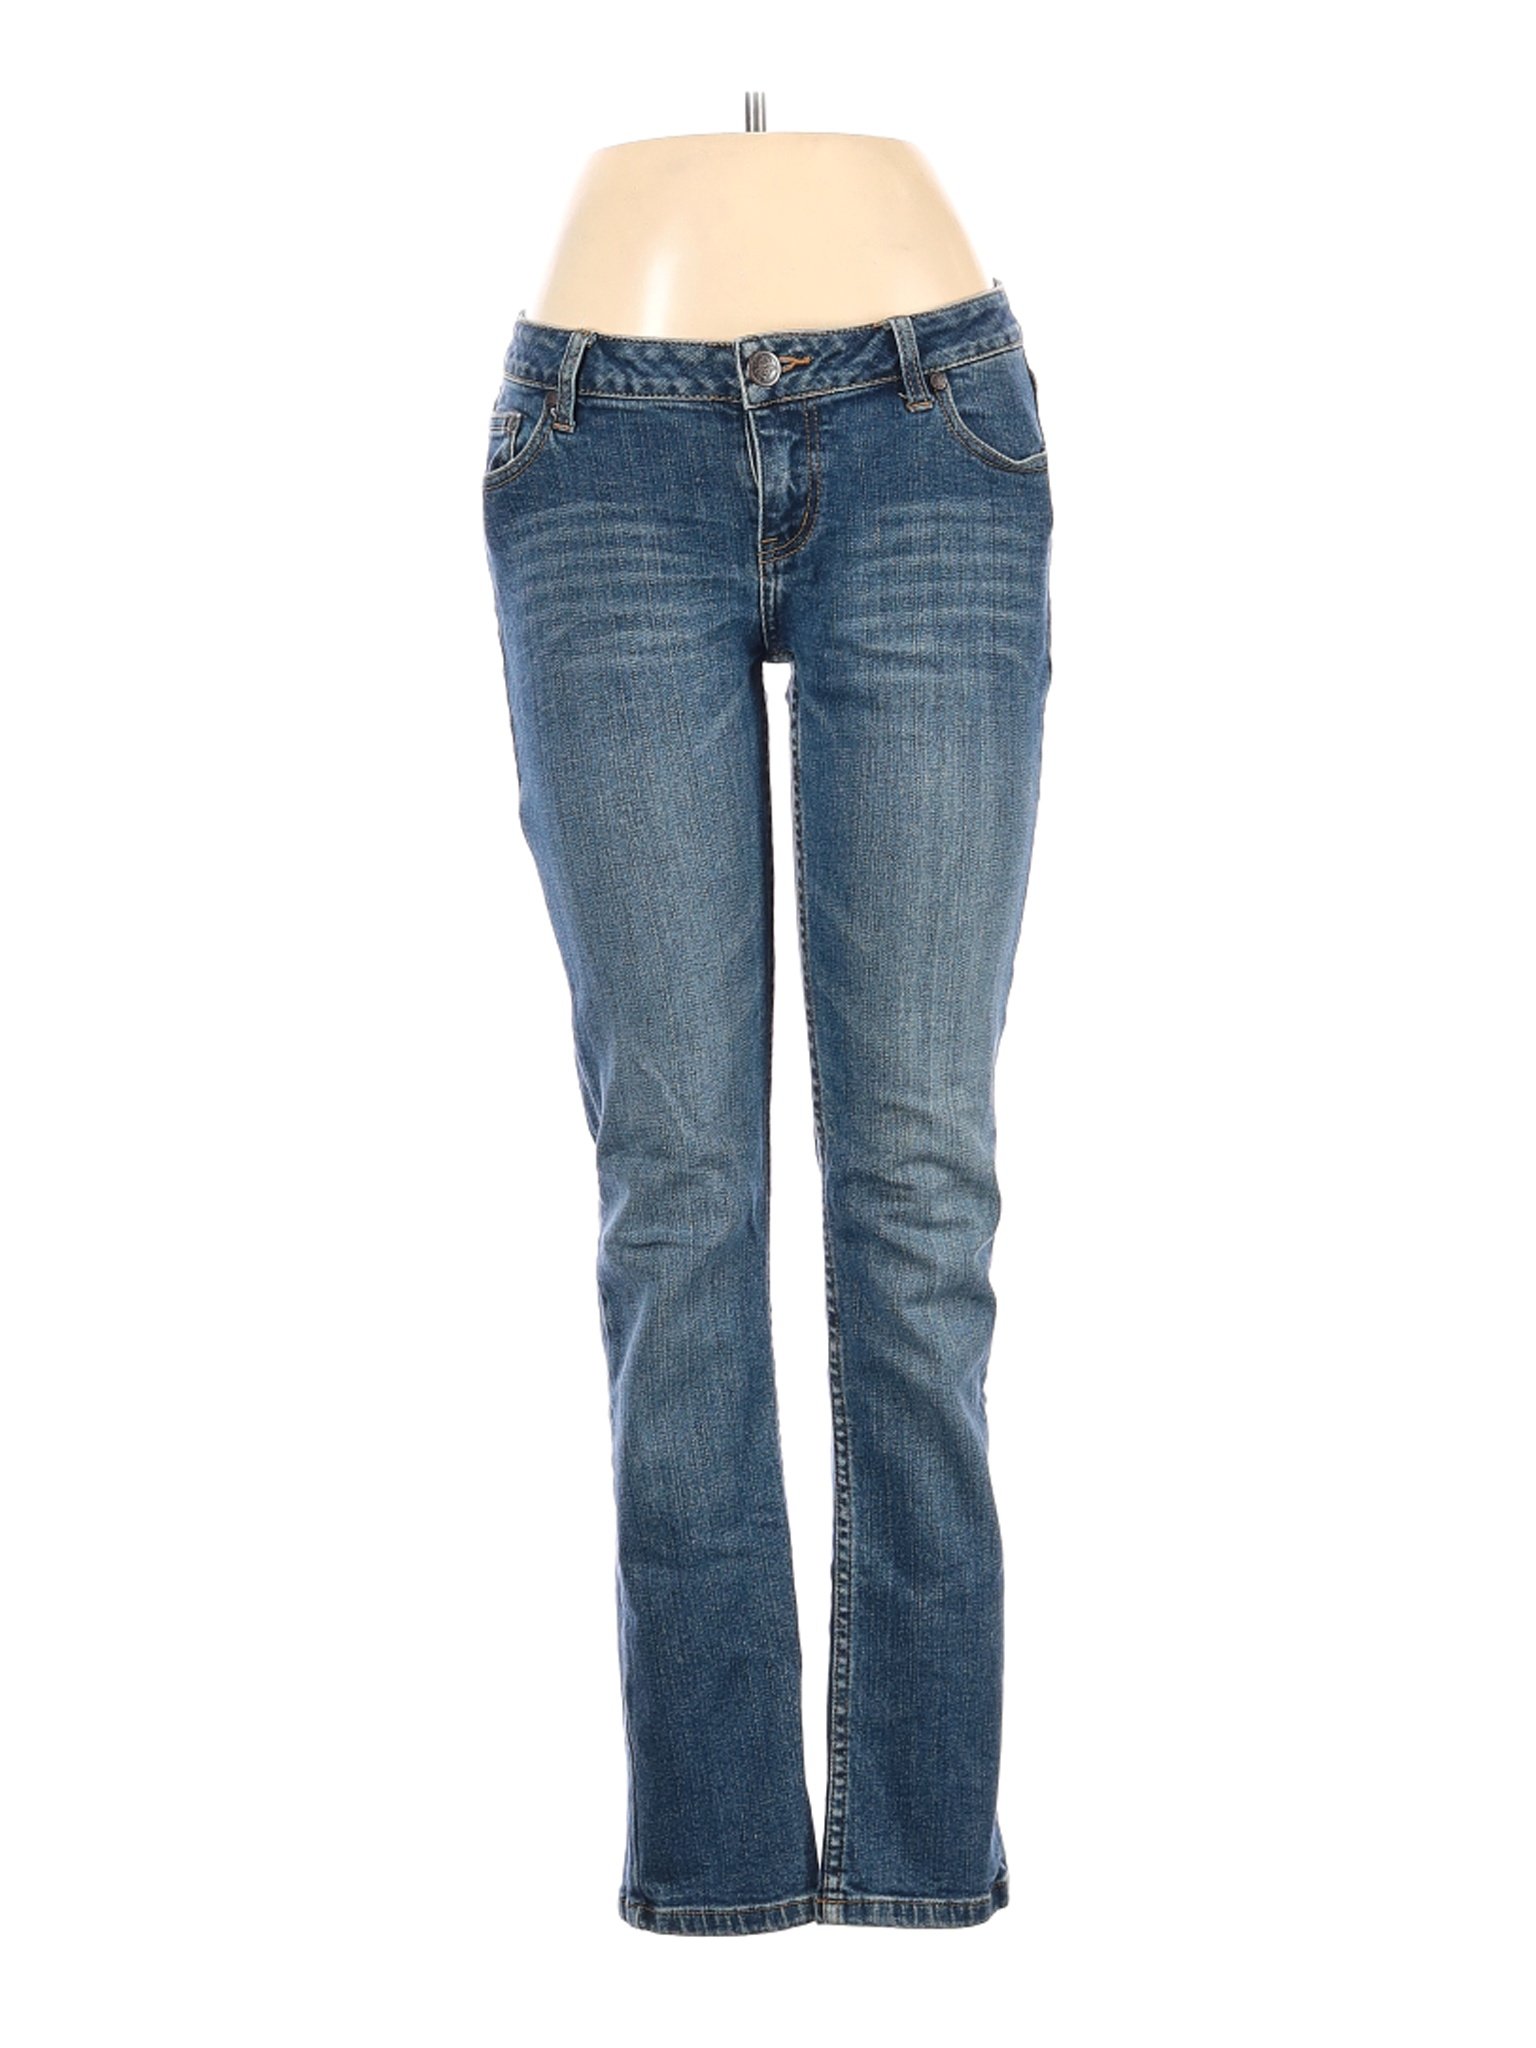 American Rag Women Blue Jeans 7 | eBay